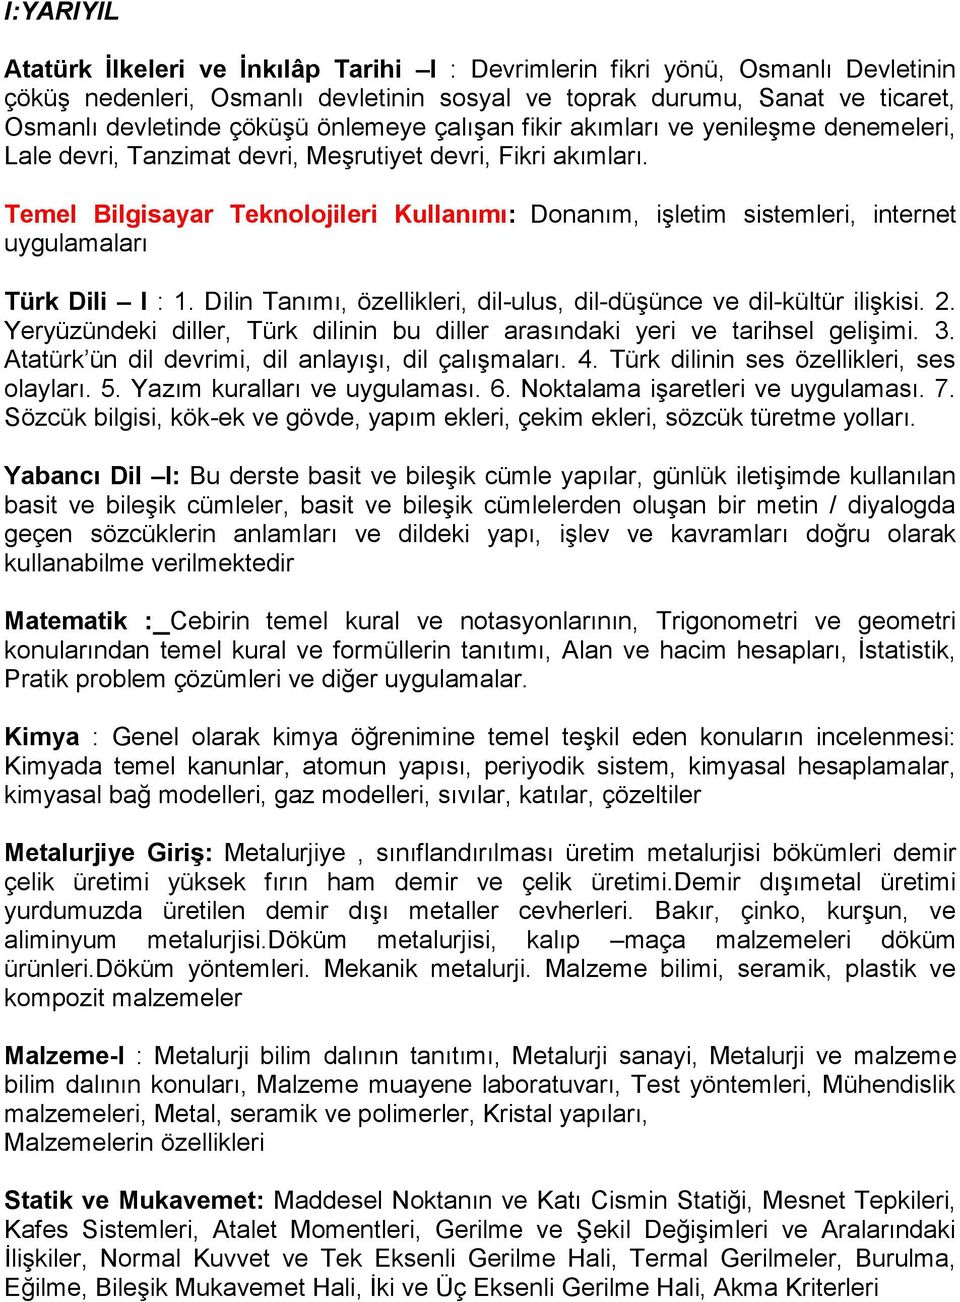 Temel Bilgisayar Teknolojileri Kullanımı: Donanım, işletim sistemleri, internet uygulamaları Türk Dili I : 1. Dilin Tanımı, özellikleri, dil-ulus, dil-düşünce ve dil-kültür ilişkisi. 2.